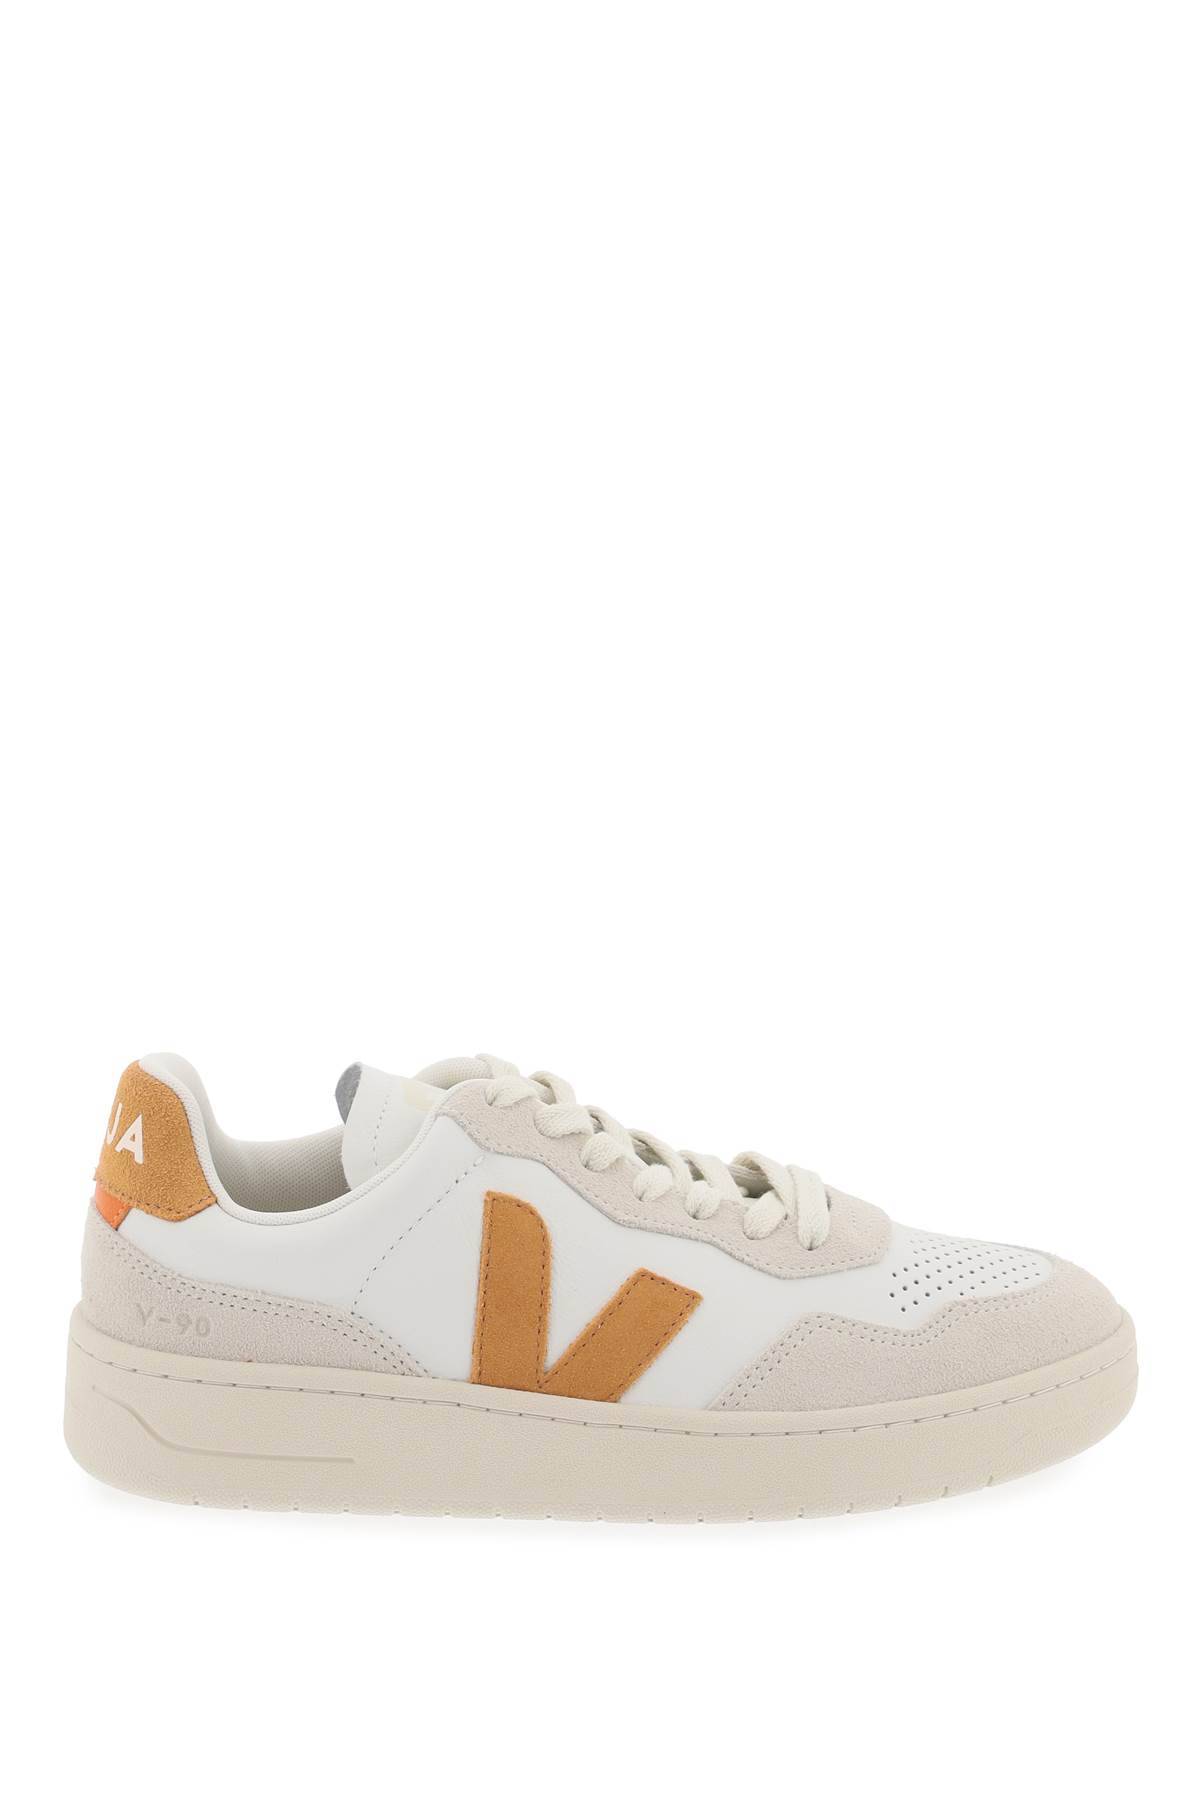 Shop Veja Leather V-90 Sne In White,beige,orange